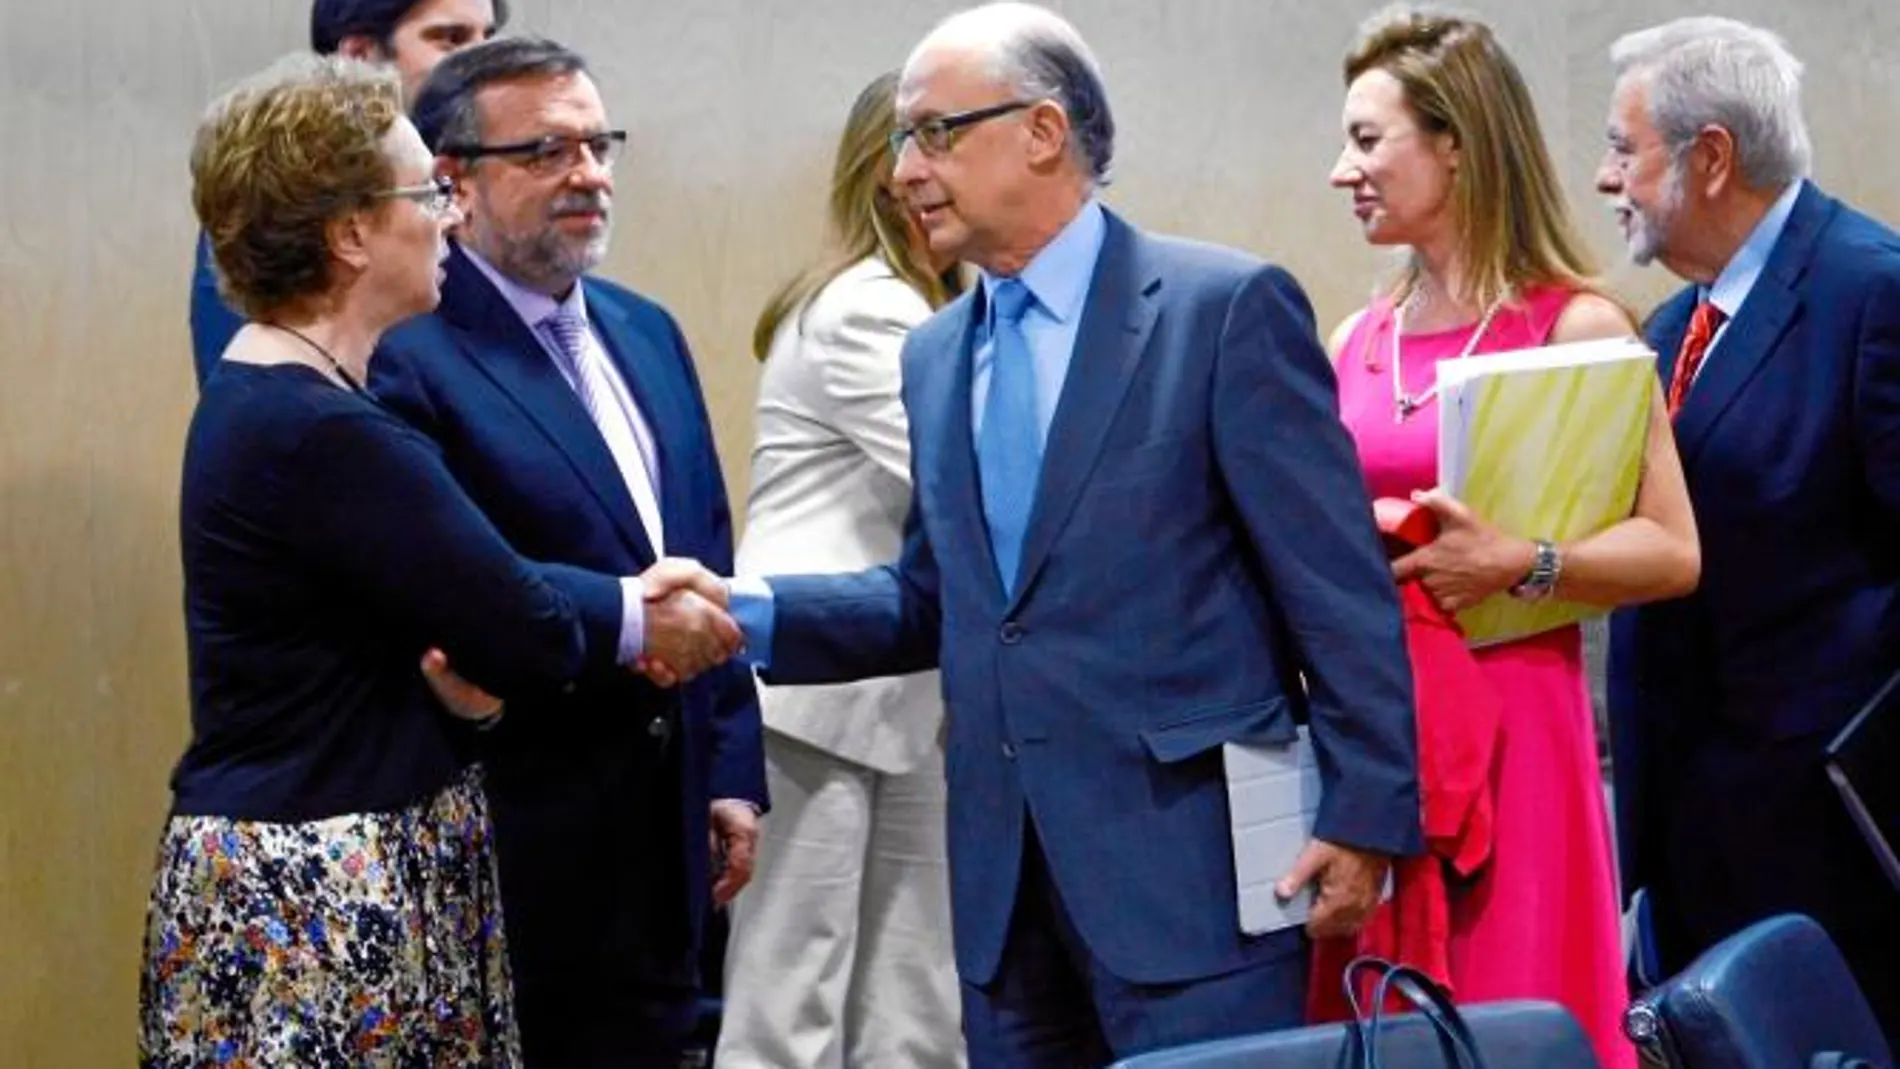 El ministro de Hacienda reprocha su actitud a la consejera andaluza, que abandonó la reunión del CPFF